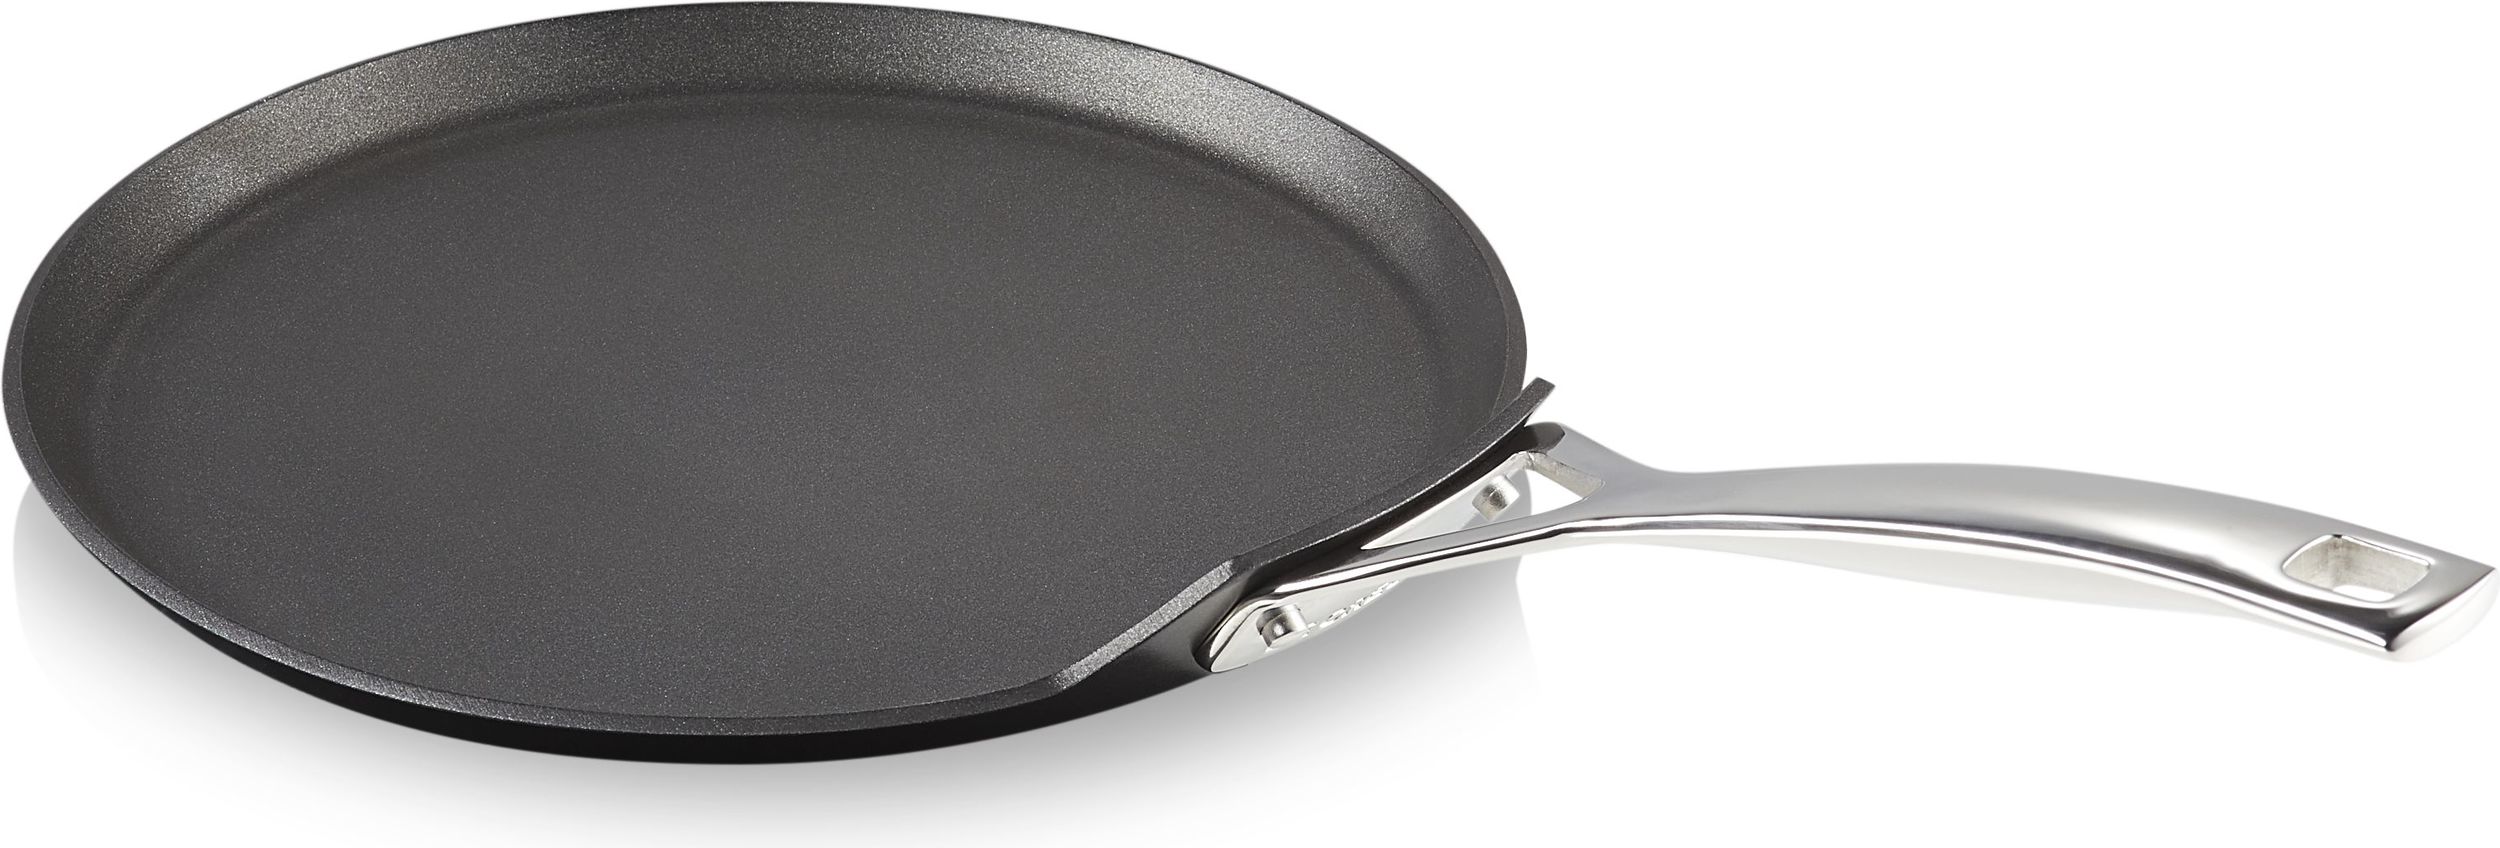 Le Creuset Crepe pan non -stick aluminum - 51106240010002